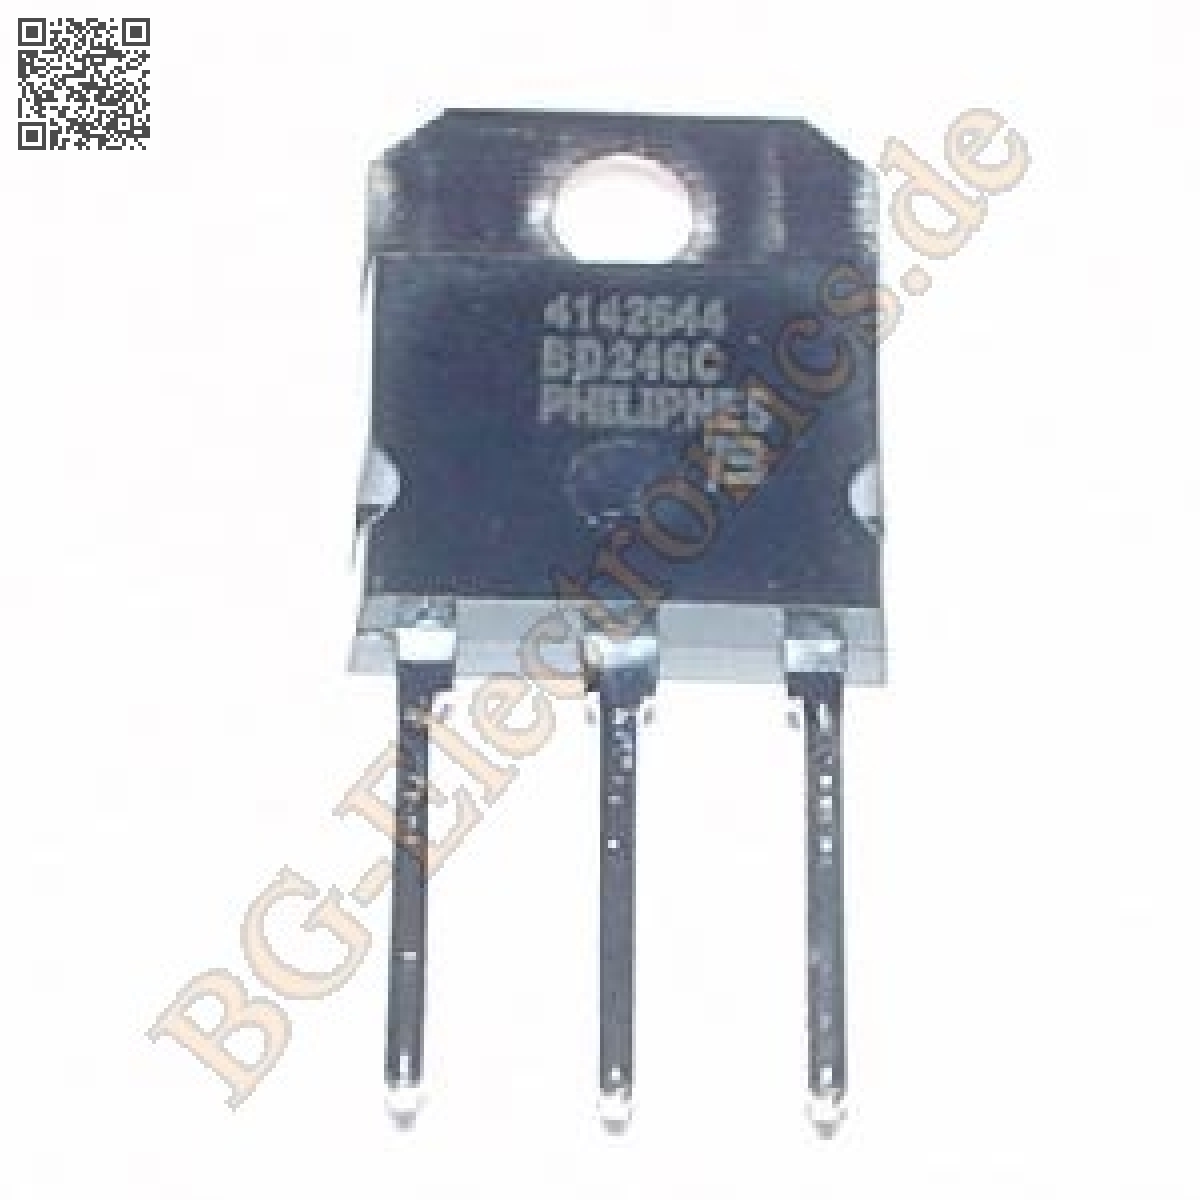 BD245C & BD246C 1 Paar 1 pair 2 Transistoren Power Tran BOURNS TO